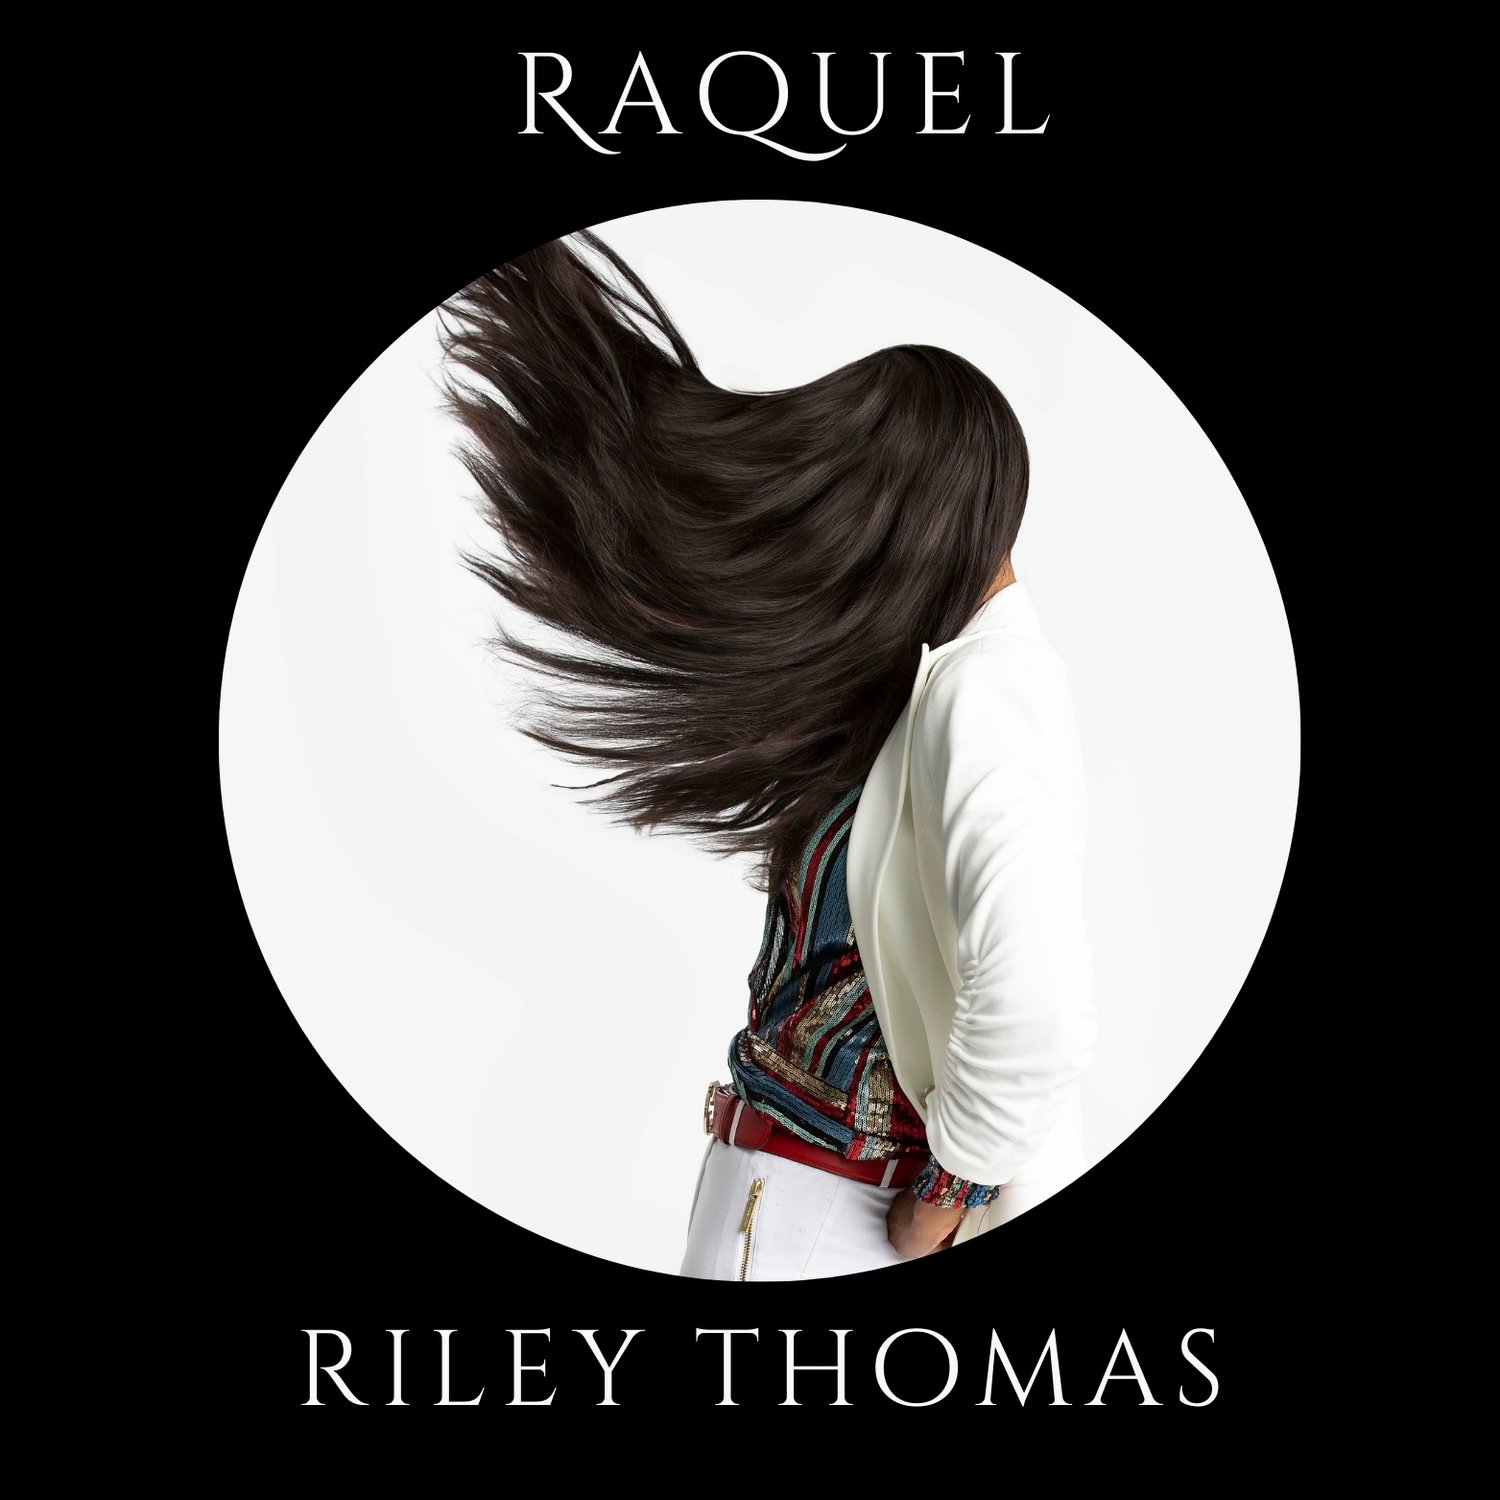 Raquel Riley Thomas